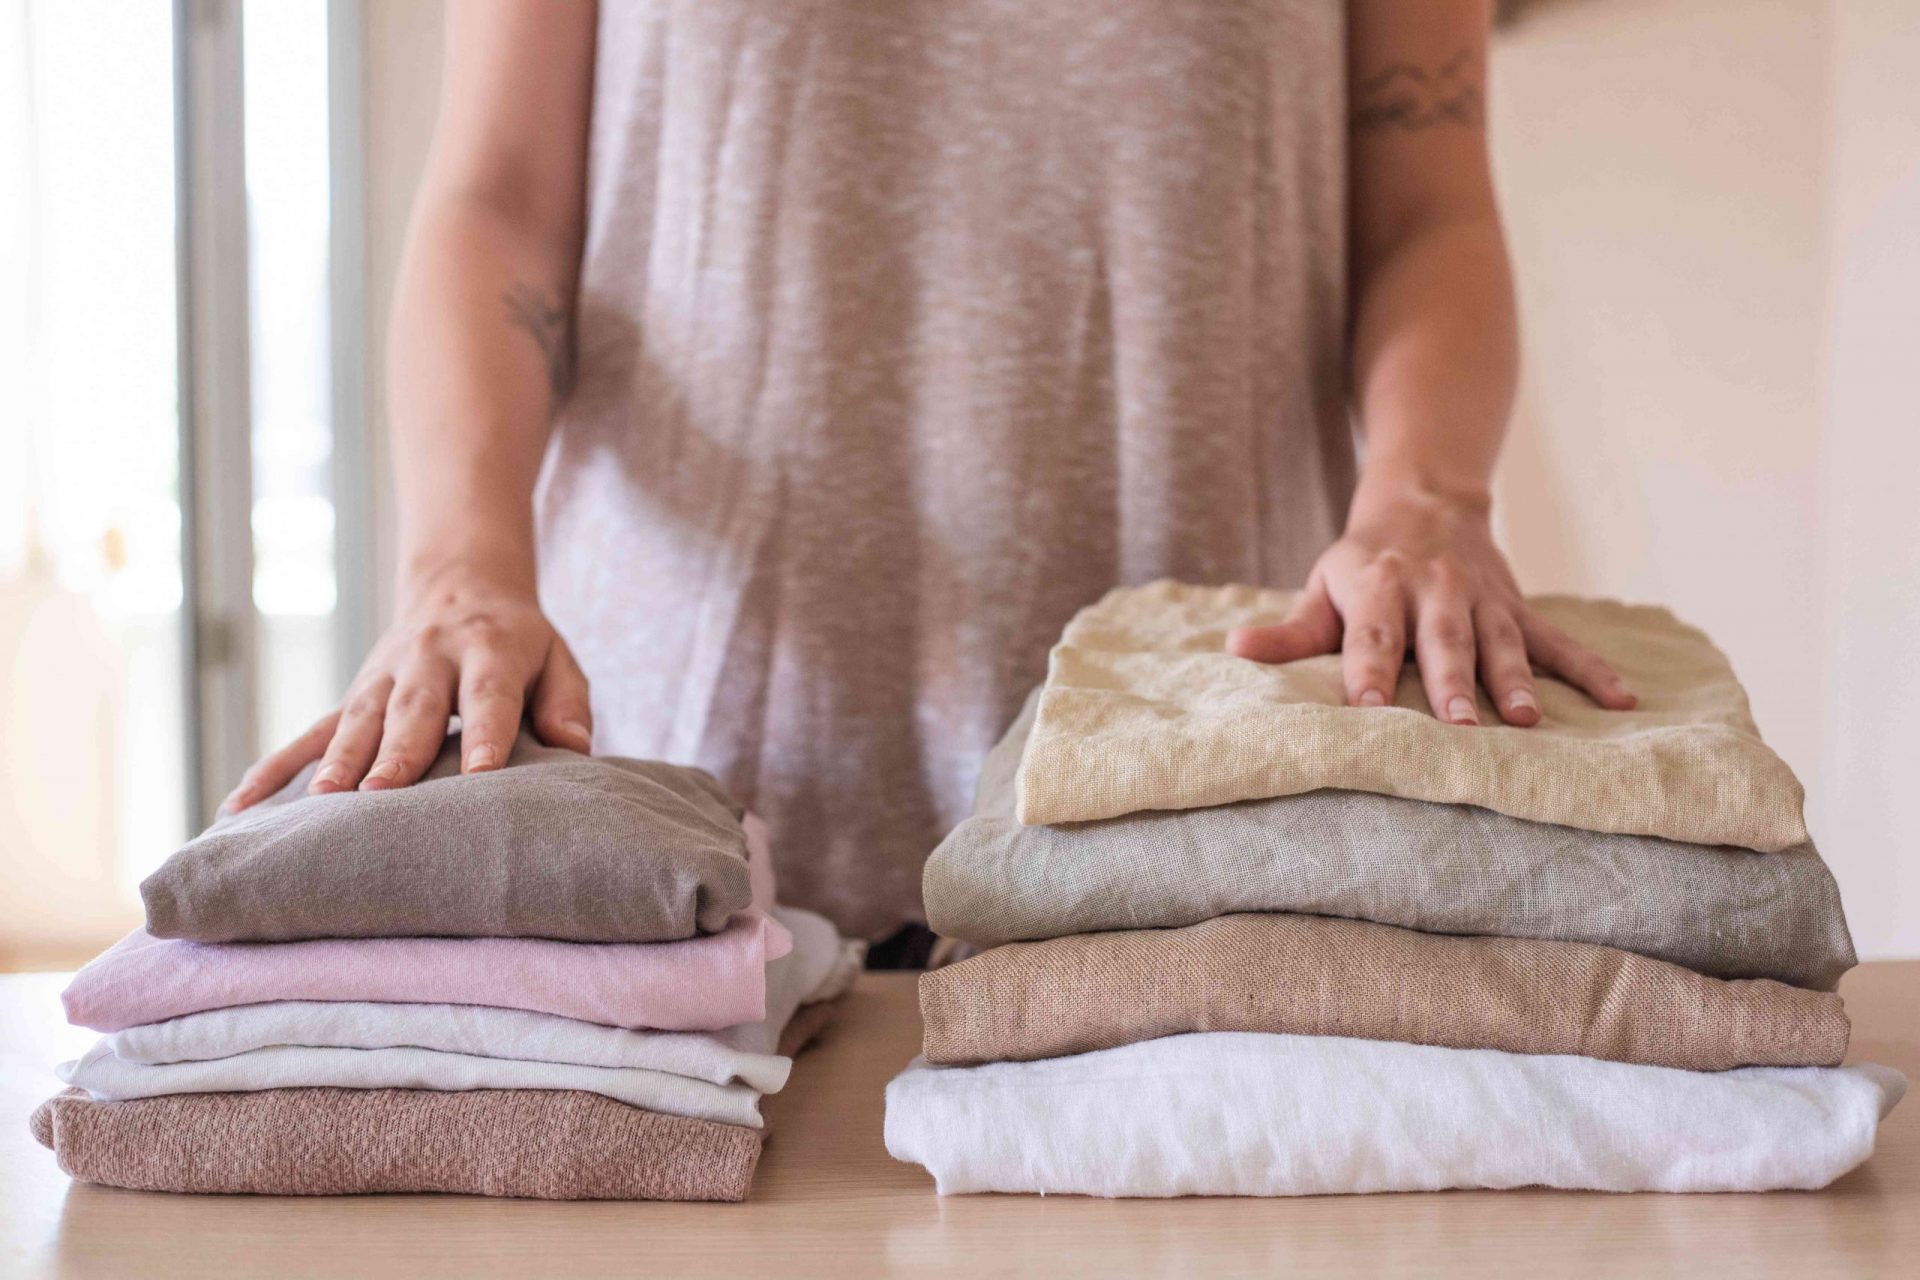 una persona delante de dos pilas de ropa dobladas: una de algodón y otra de lino